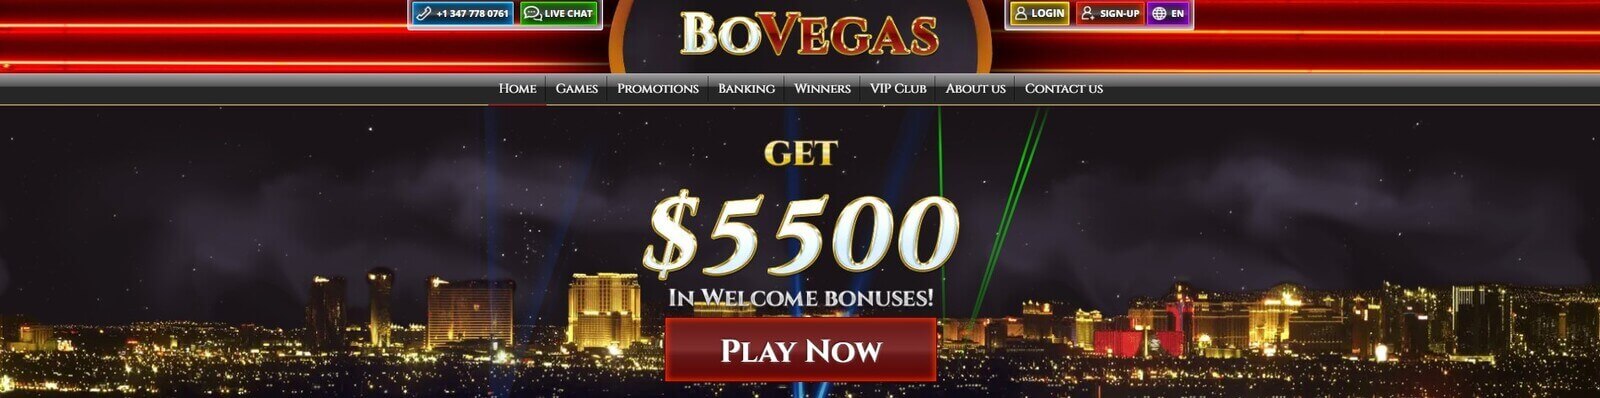 Página web de Bovegas Casino online